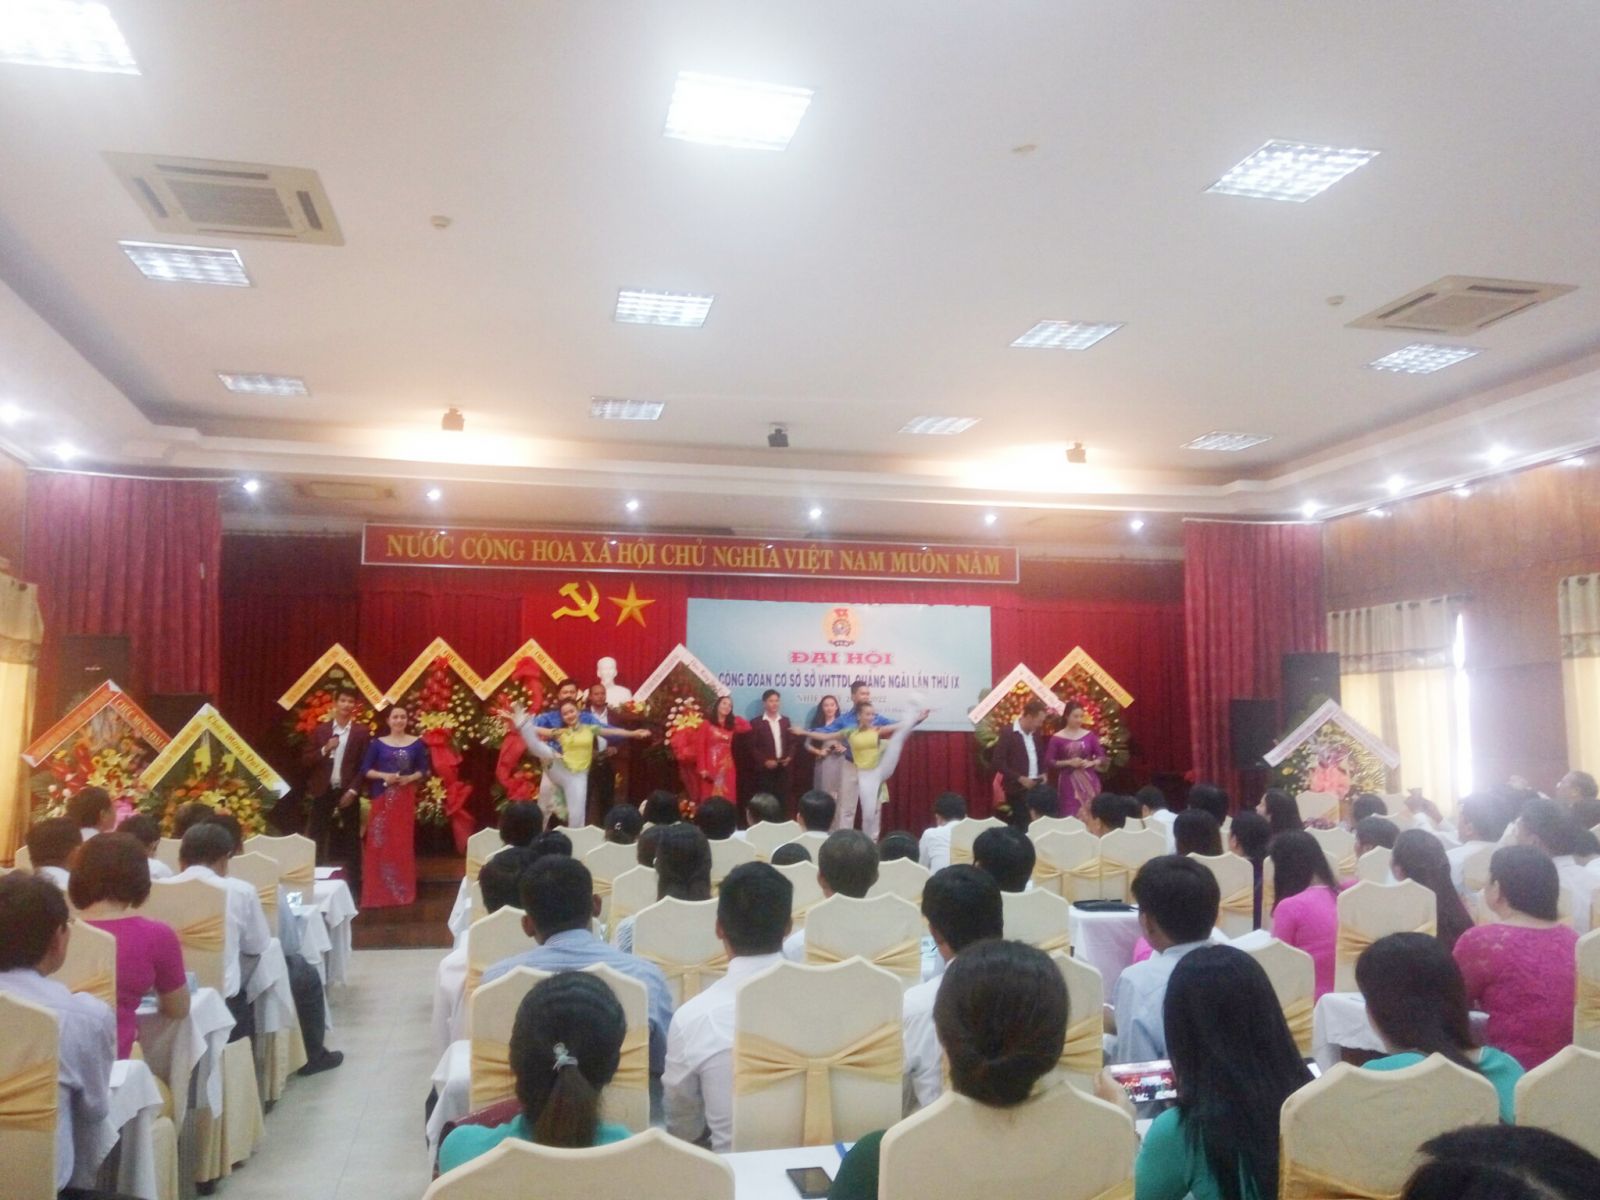 Đại hội công đoàn cơ sở VHTTDL tỉnh Quảng Ngãi lần thứ IX tại khách sạn Hùng Vương